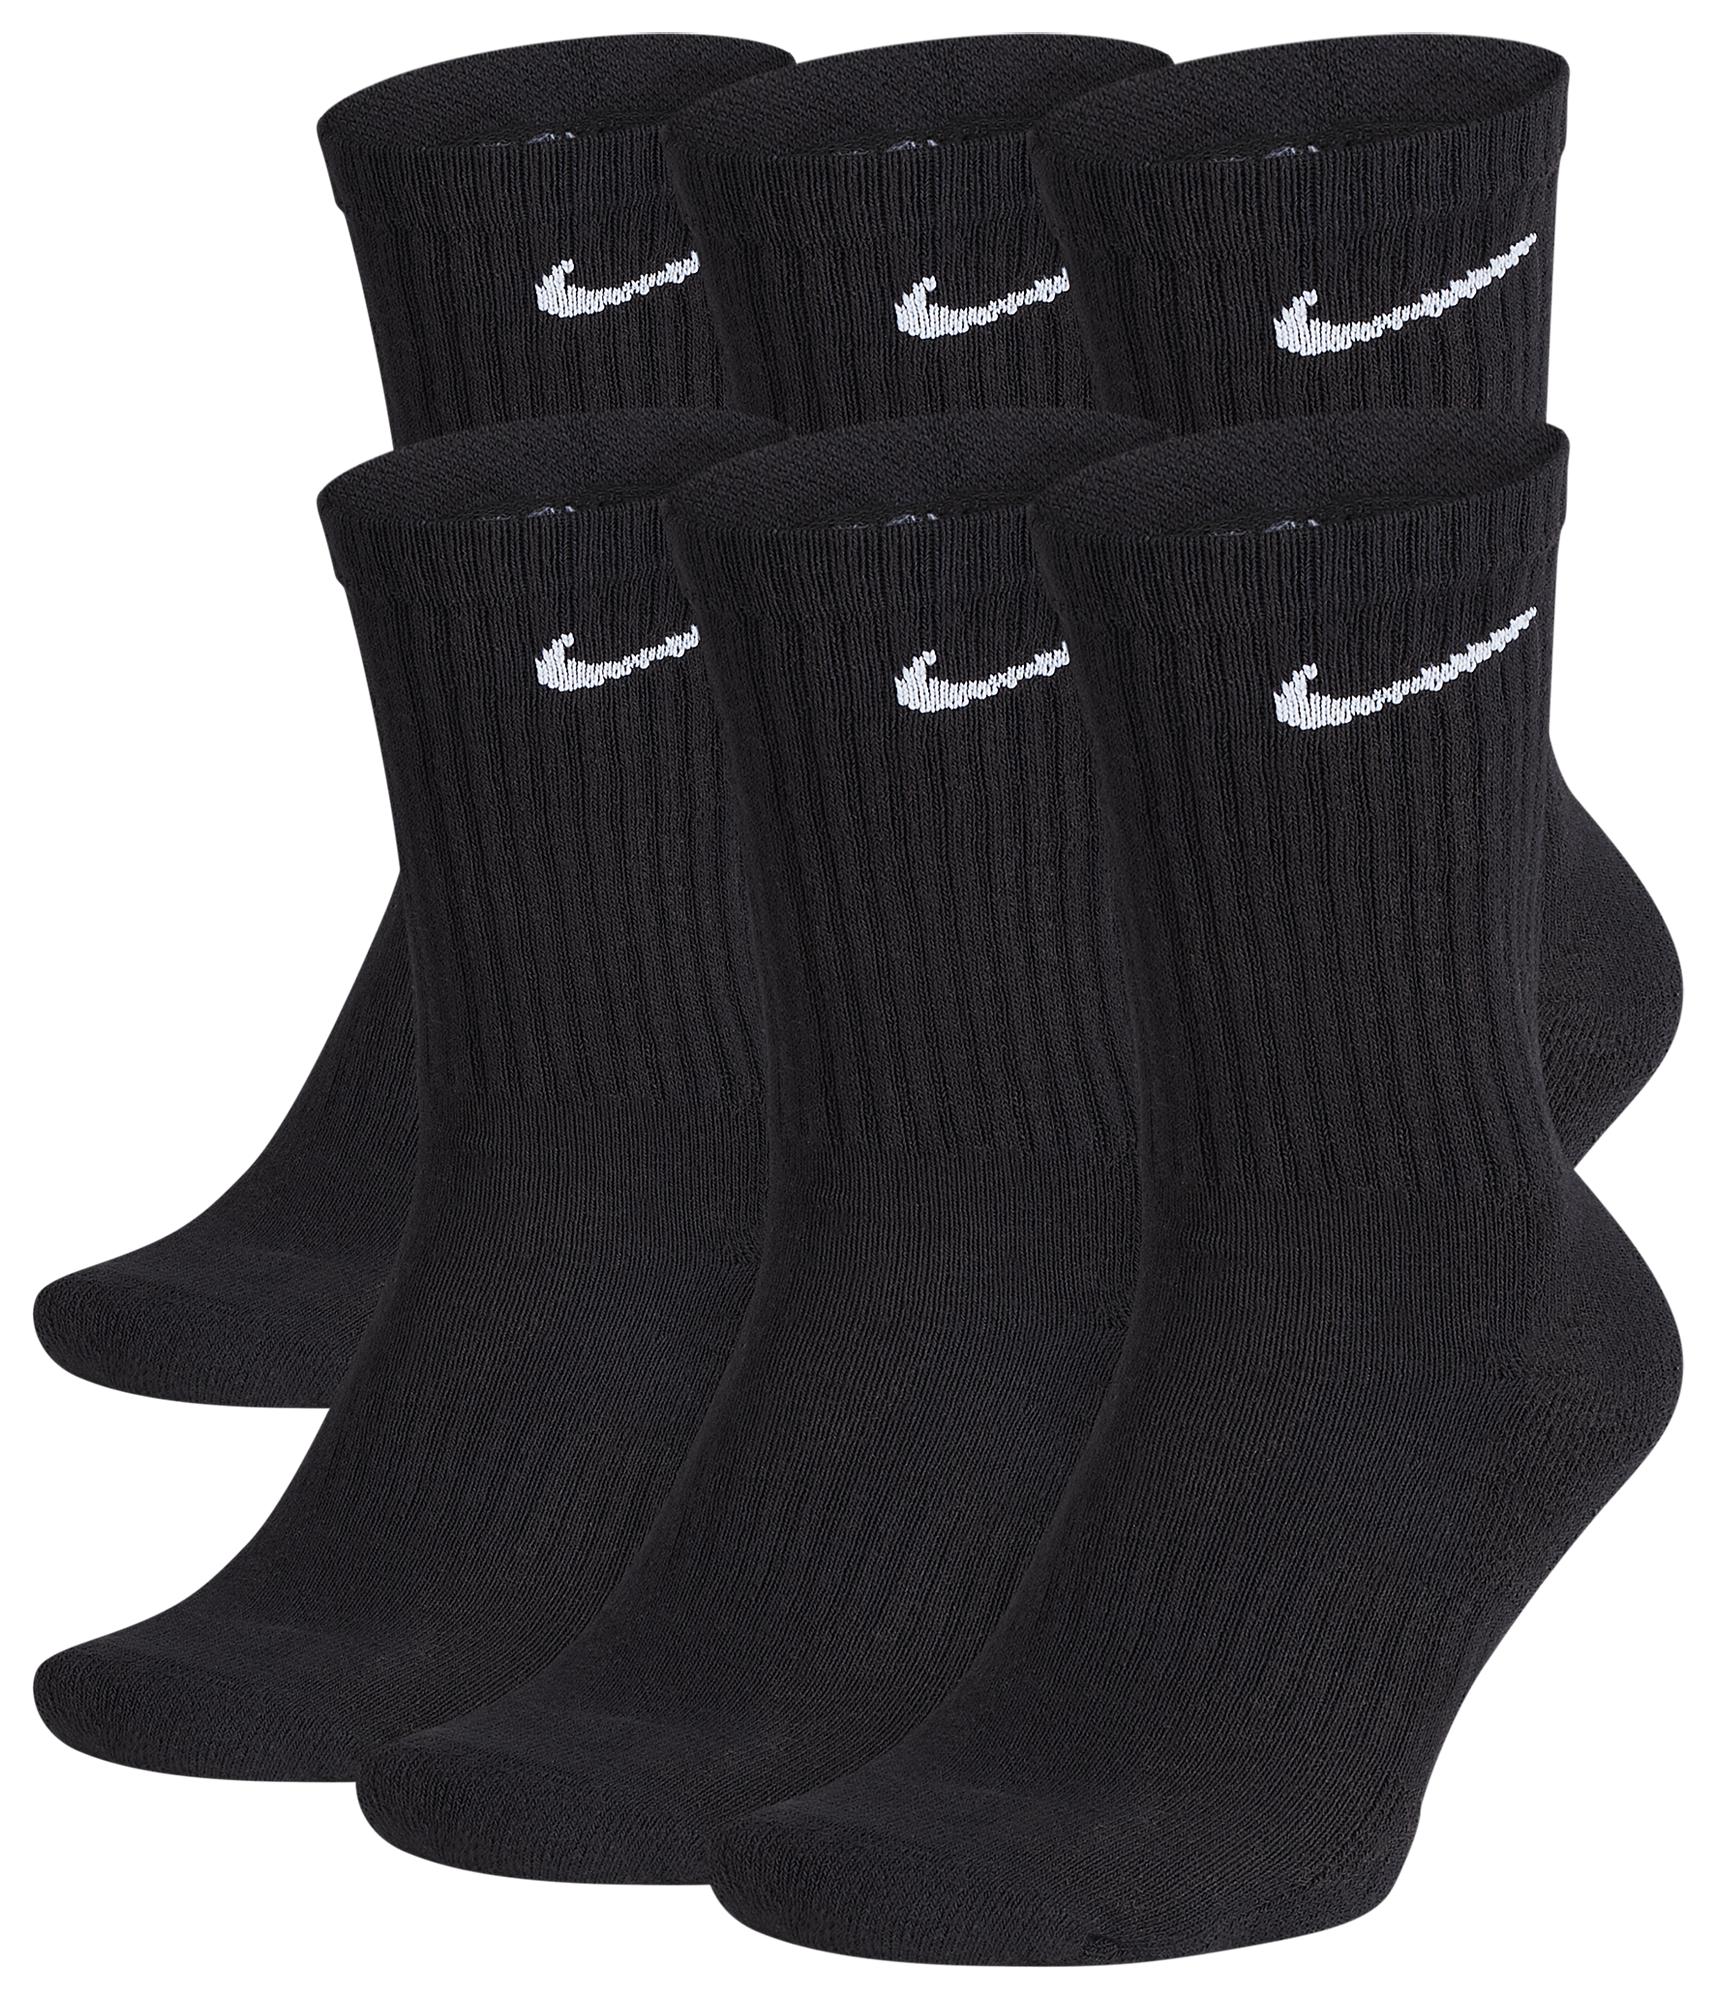 Nike 6 Pack Performance Cotton Crew Socks in Black for Men - Lyst